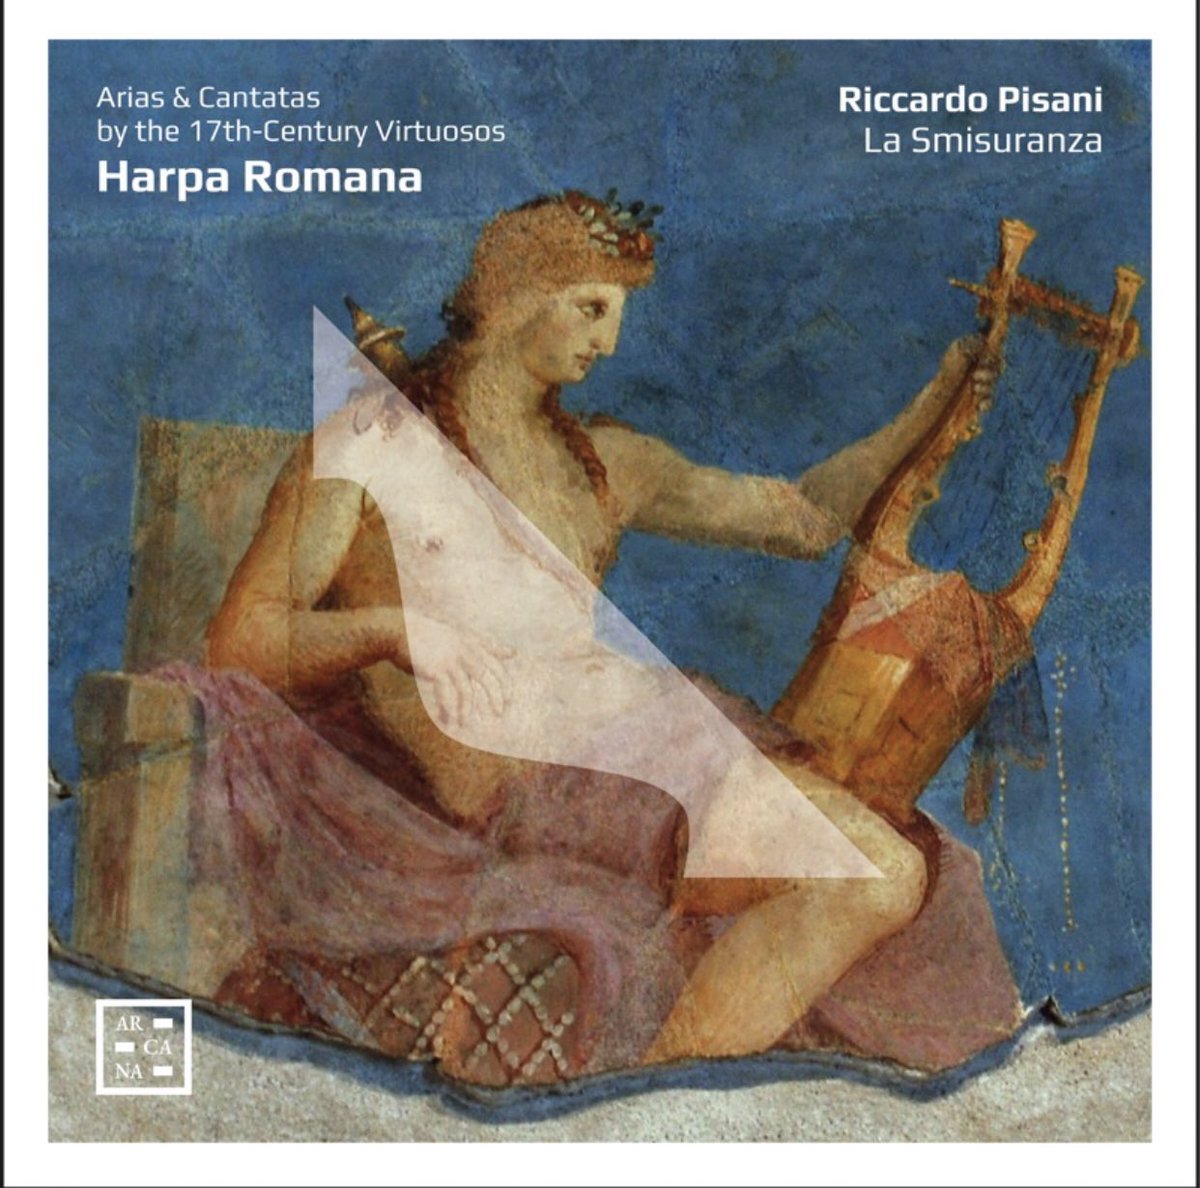 È così dolce la pena · Riccardo Pisani · La smisuranza

Harpa Romana. Arias & Cantatas by the 17th-Century Virtuosos

youtu.be/1LykYA_RQ_4?si…